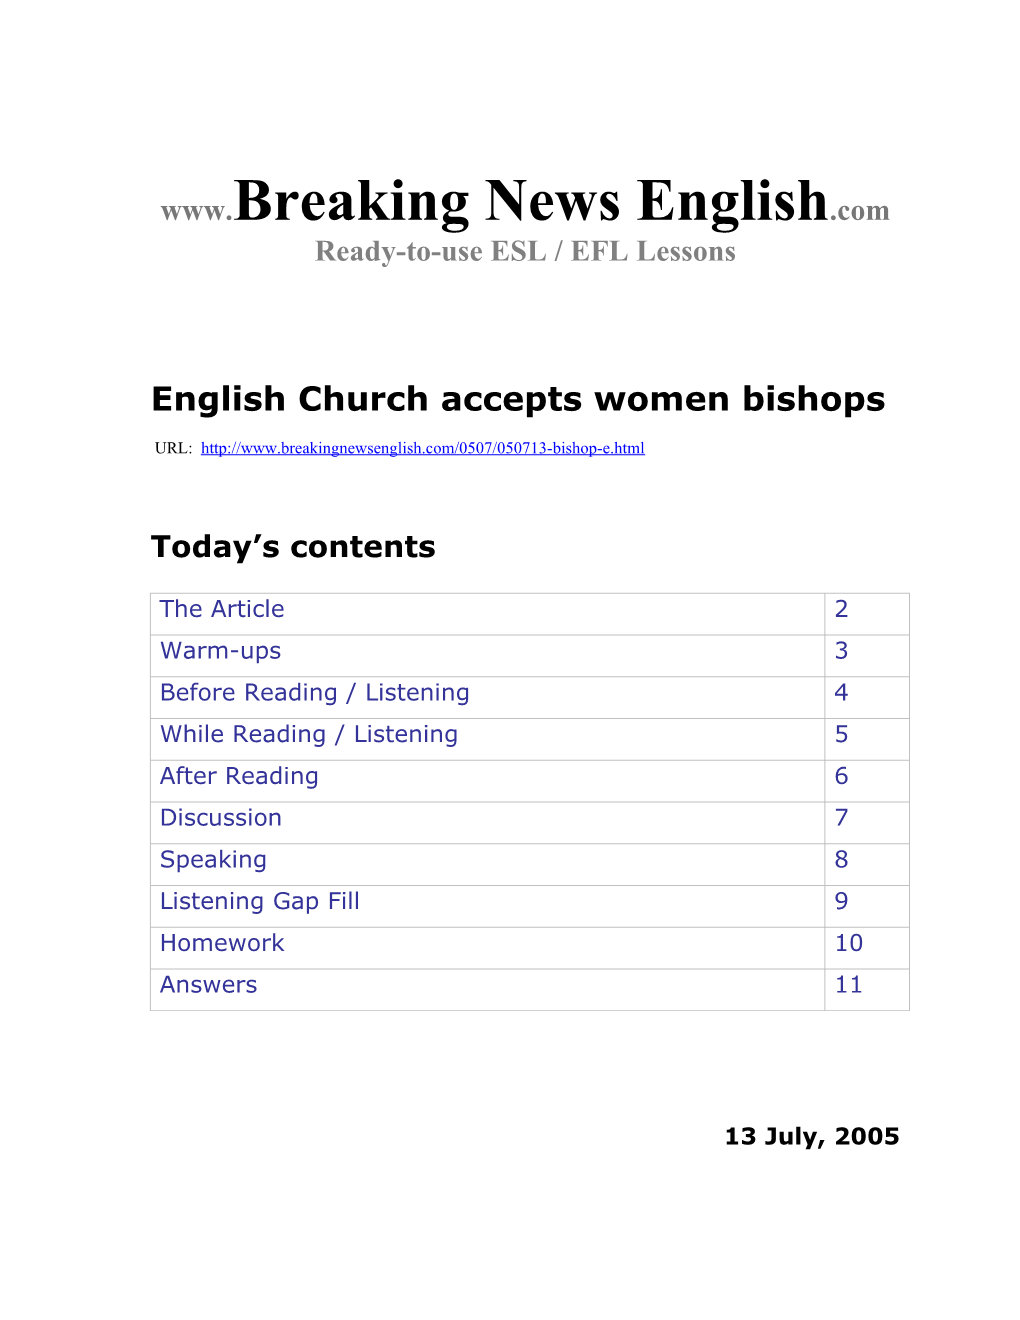 English Church Accepts Women Bishops